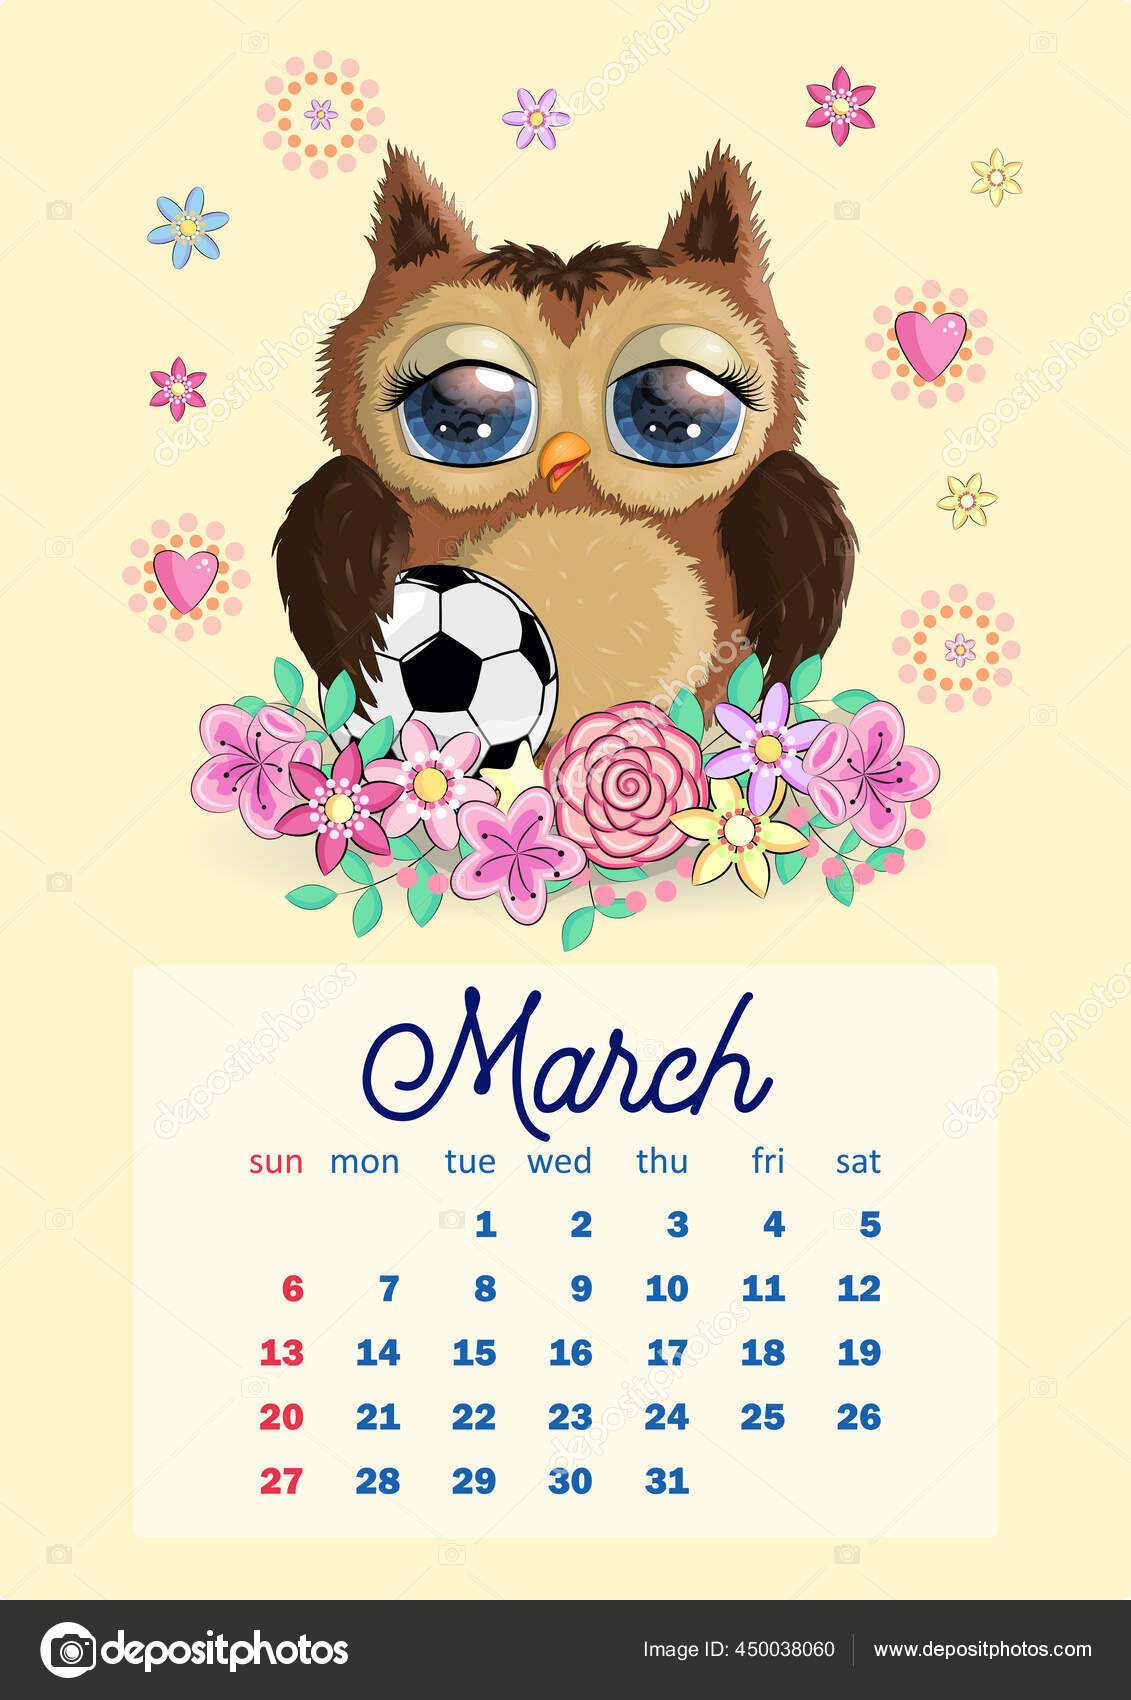 Cute Cartoon Owl Beautiful Eyes Wall Calendar Design Template 2022 Vector Image By C Michiru13 Vector Stock 450038060